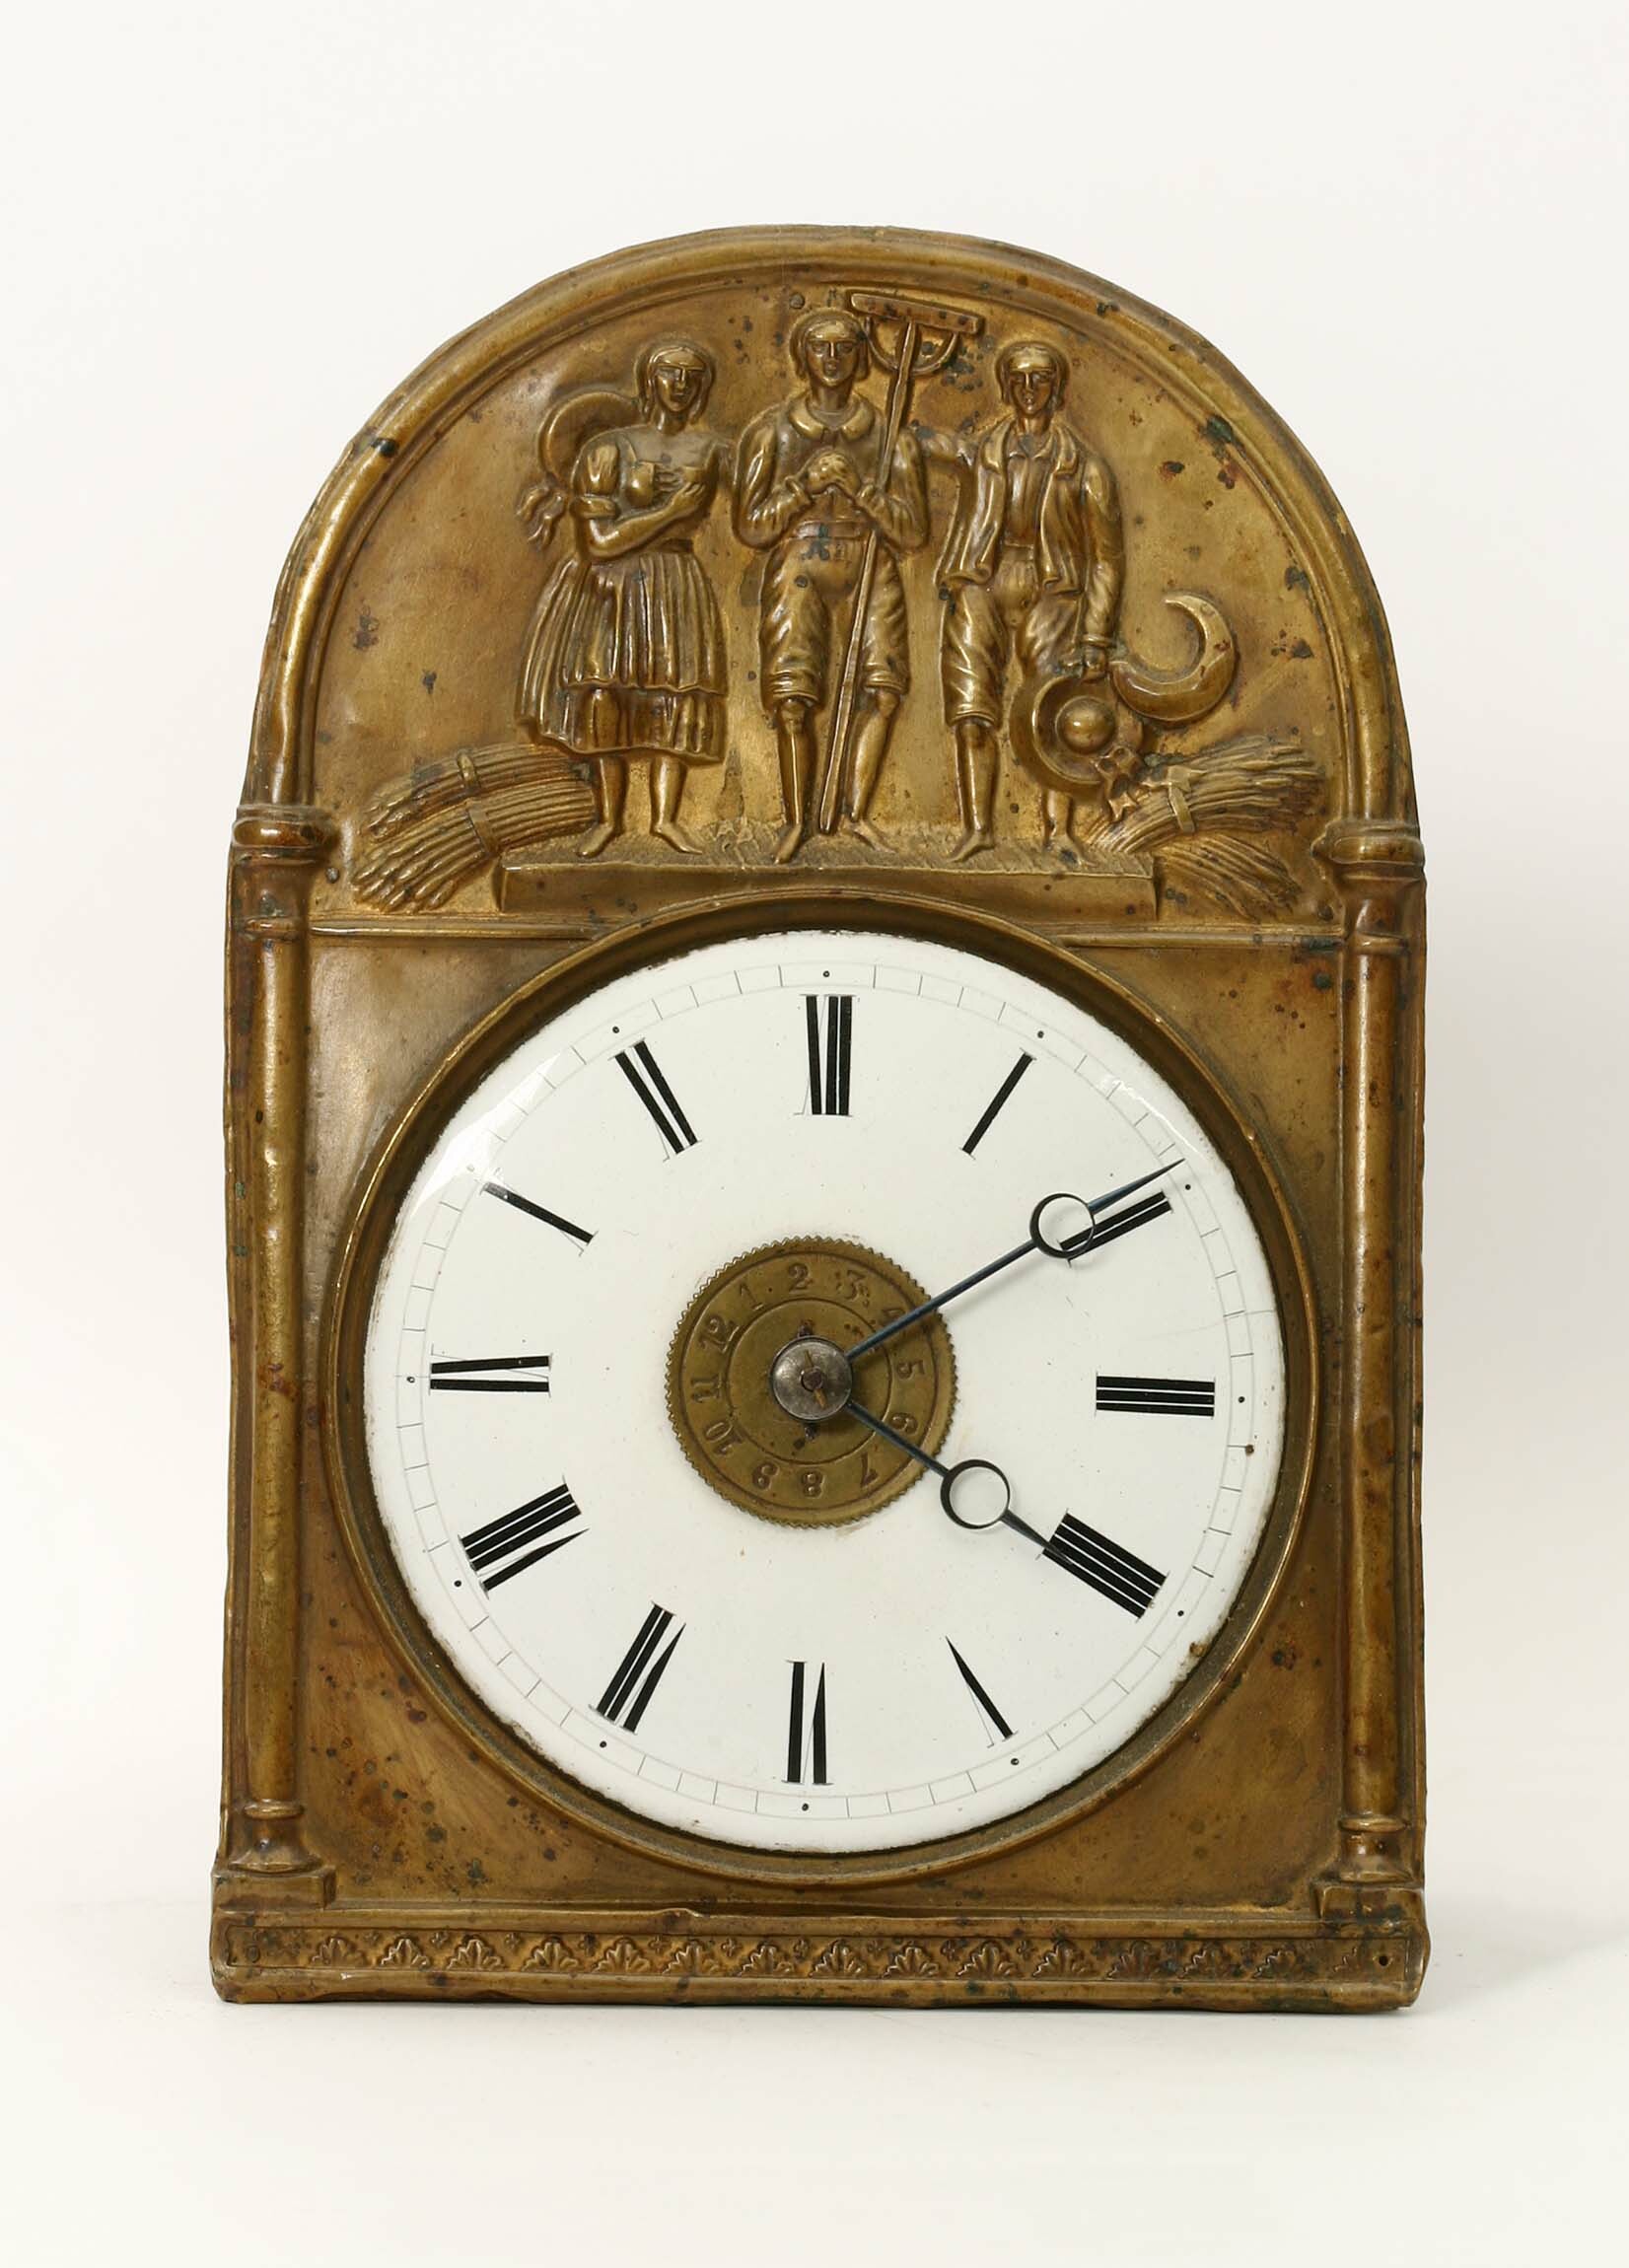 Schottenuhr, Max Rungas, Neustadt, um 1860 (Deutsches Uhrenmuseum CC BY-SA)